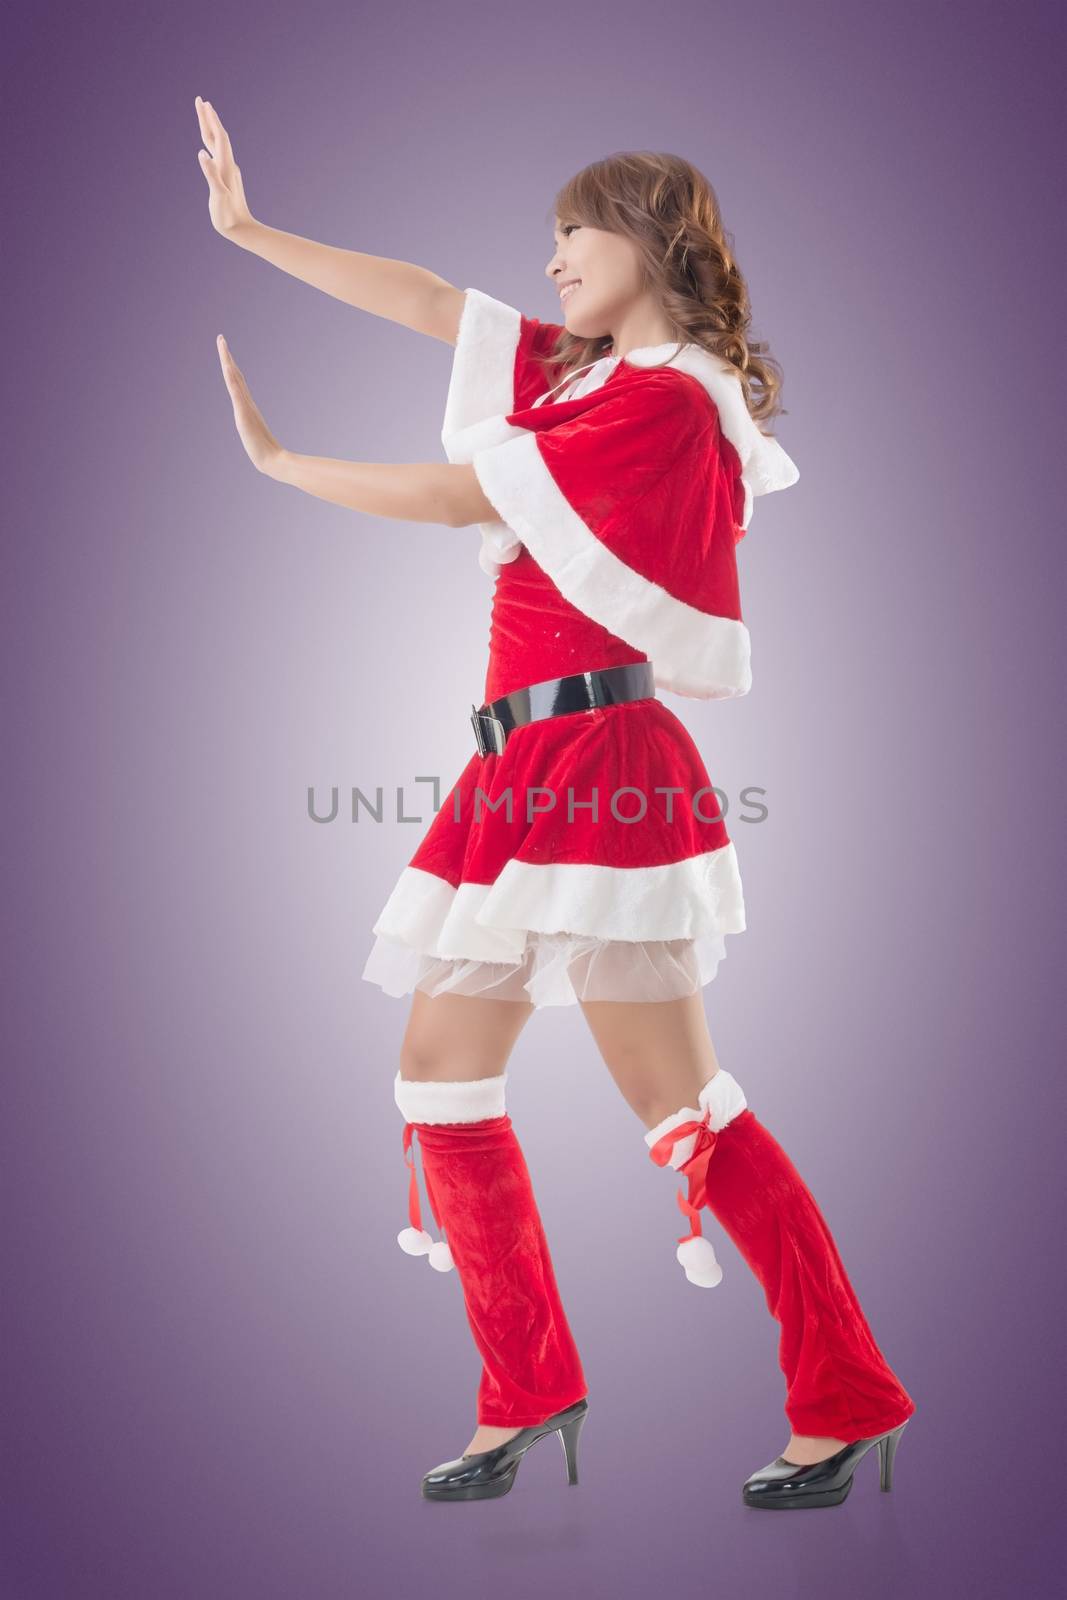 Christmas girl push something, full length pose isolated.